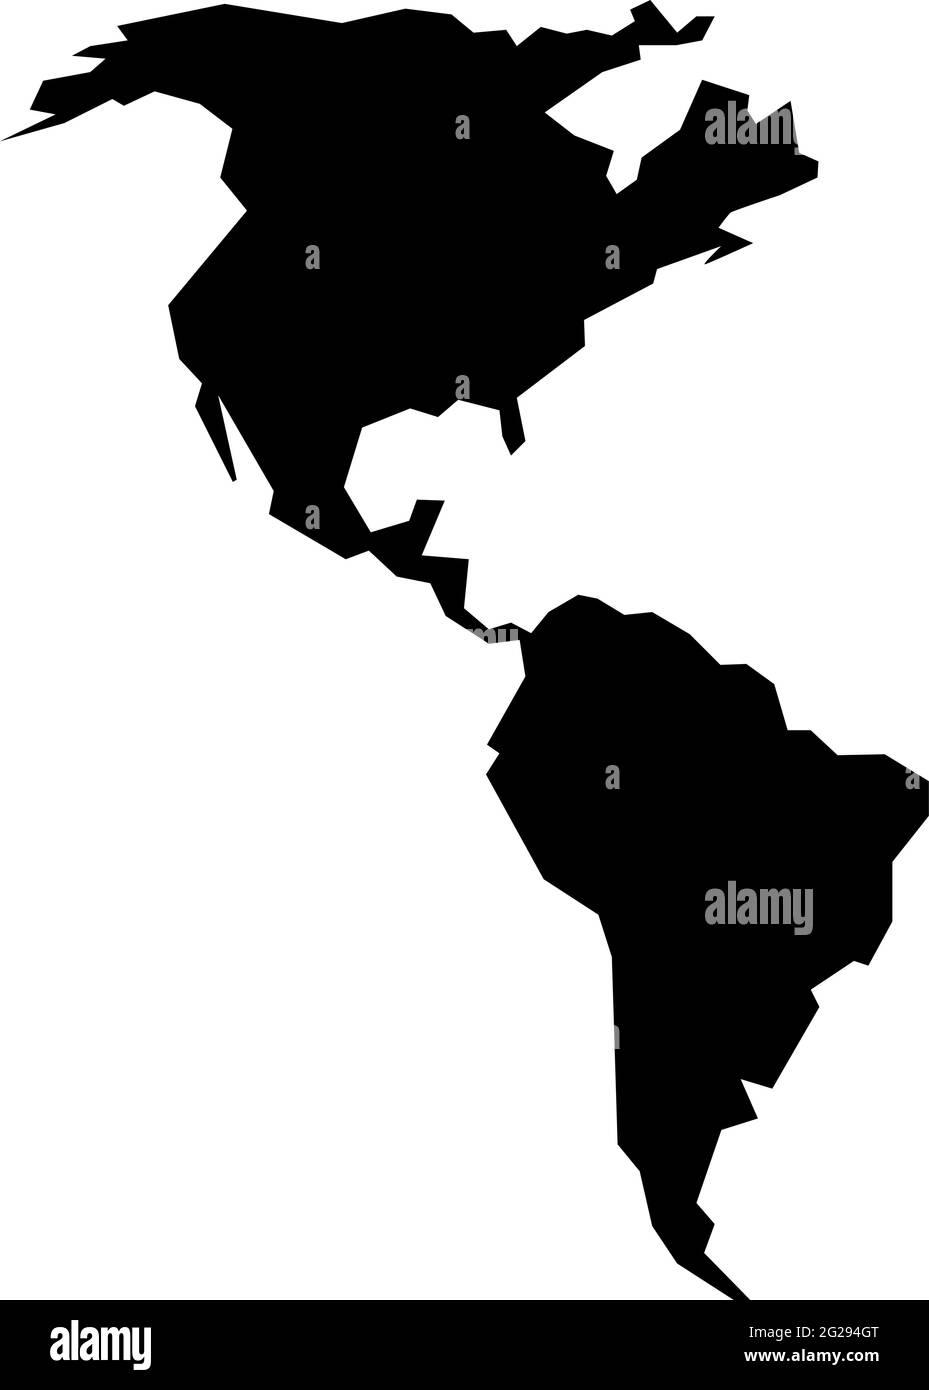 Raue Silhouette des amerikanischen Kontinents isoliert auf weißem Vektor-Illustration Stock Vektor